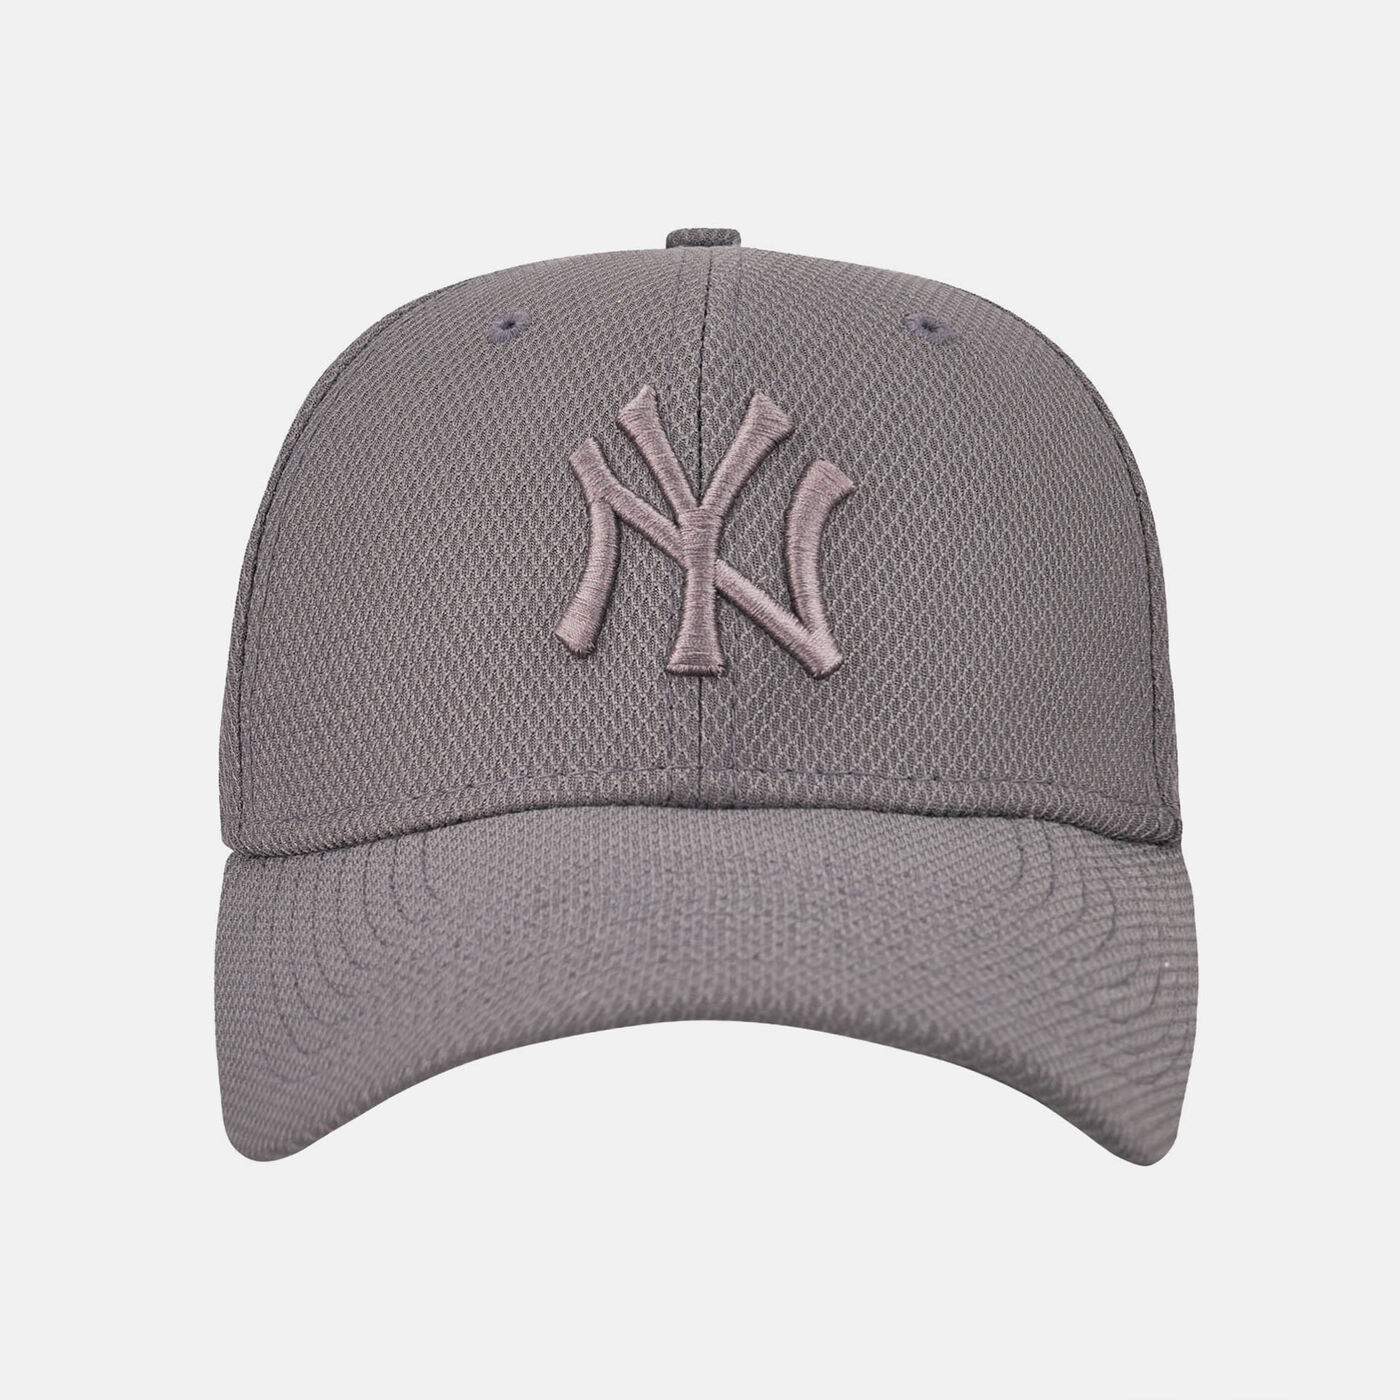 Men's New York Yankees Diamond Era 39THIRTY Cap